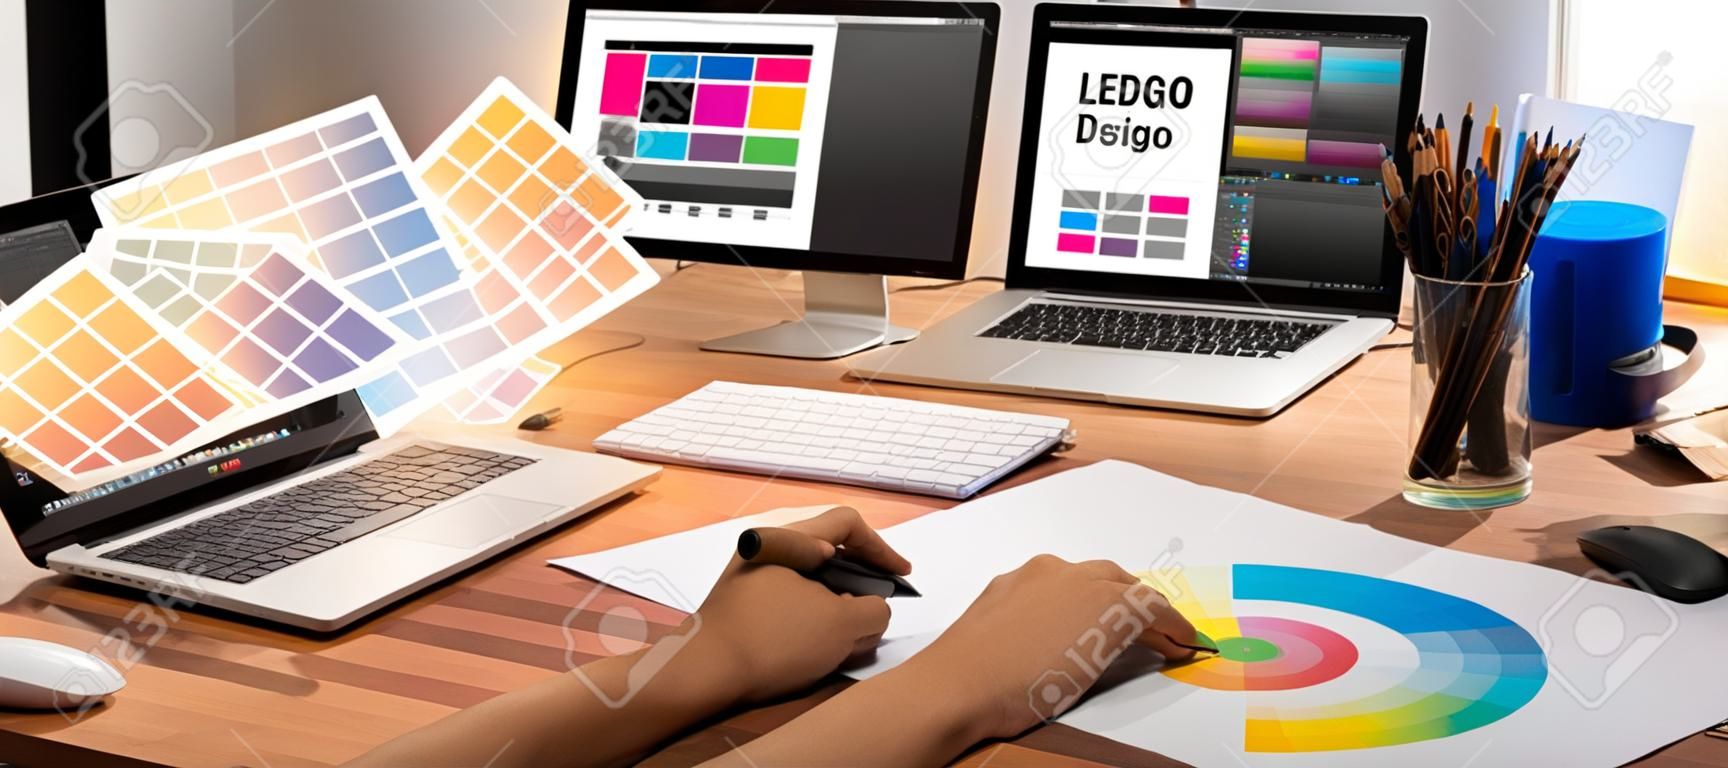 El diseñador gráfico trabaja en una computadora portátil y con un lápiz de dibujo gráfico mientras realiza una lluvia de ideas sobre un diseño único con un equipo gráfico profesional en un moderno estudio digital en el lugar de trabajo.